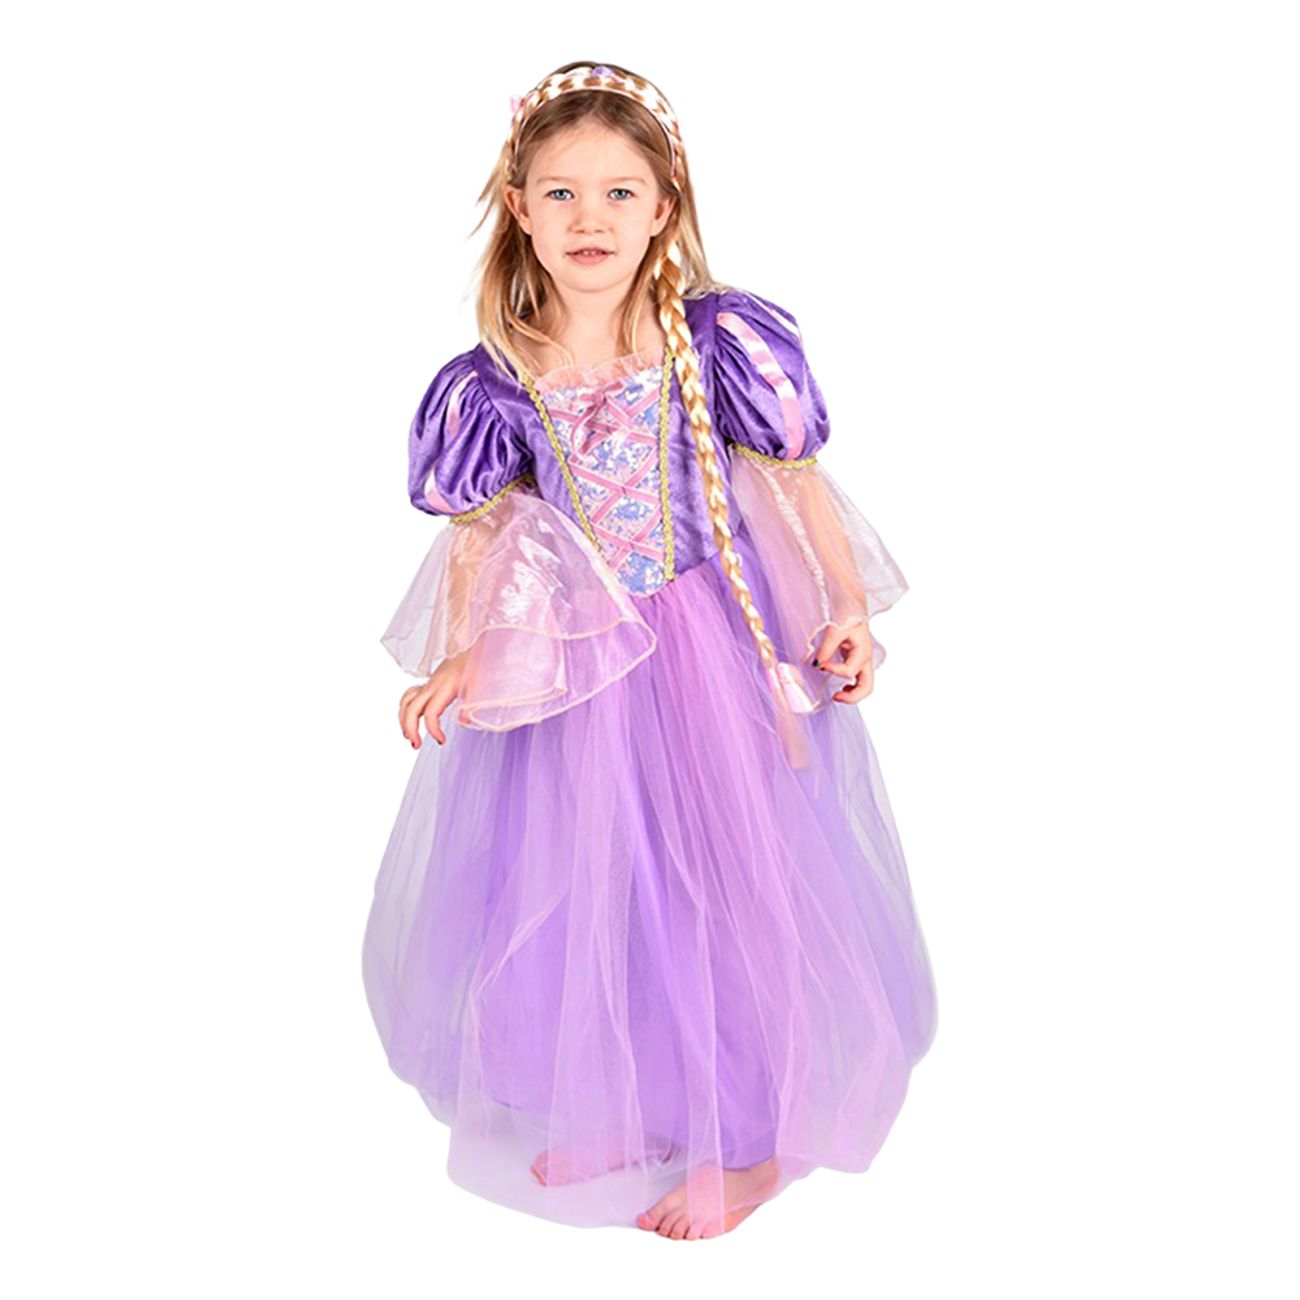 Rapunzel kostume til børn - Disney prinsesse kostume til børn